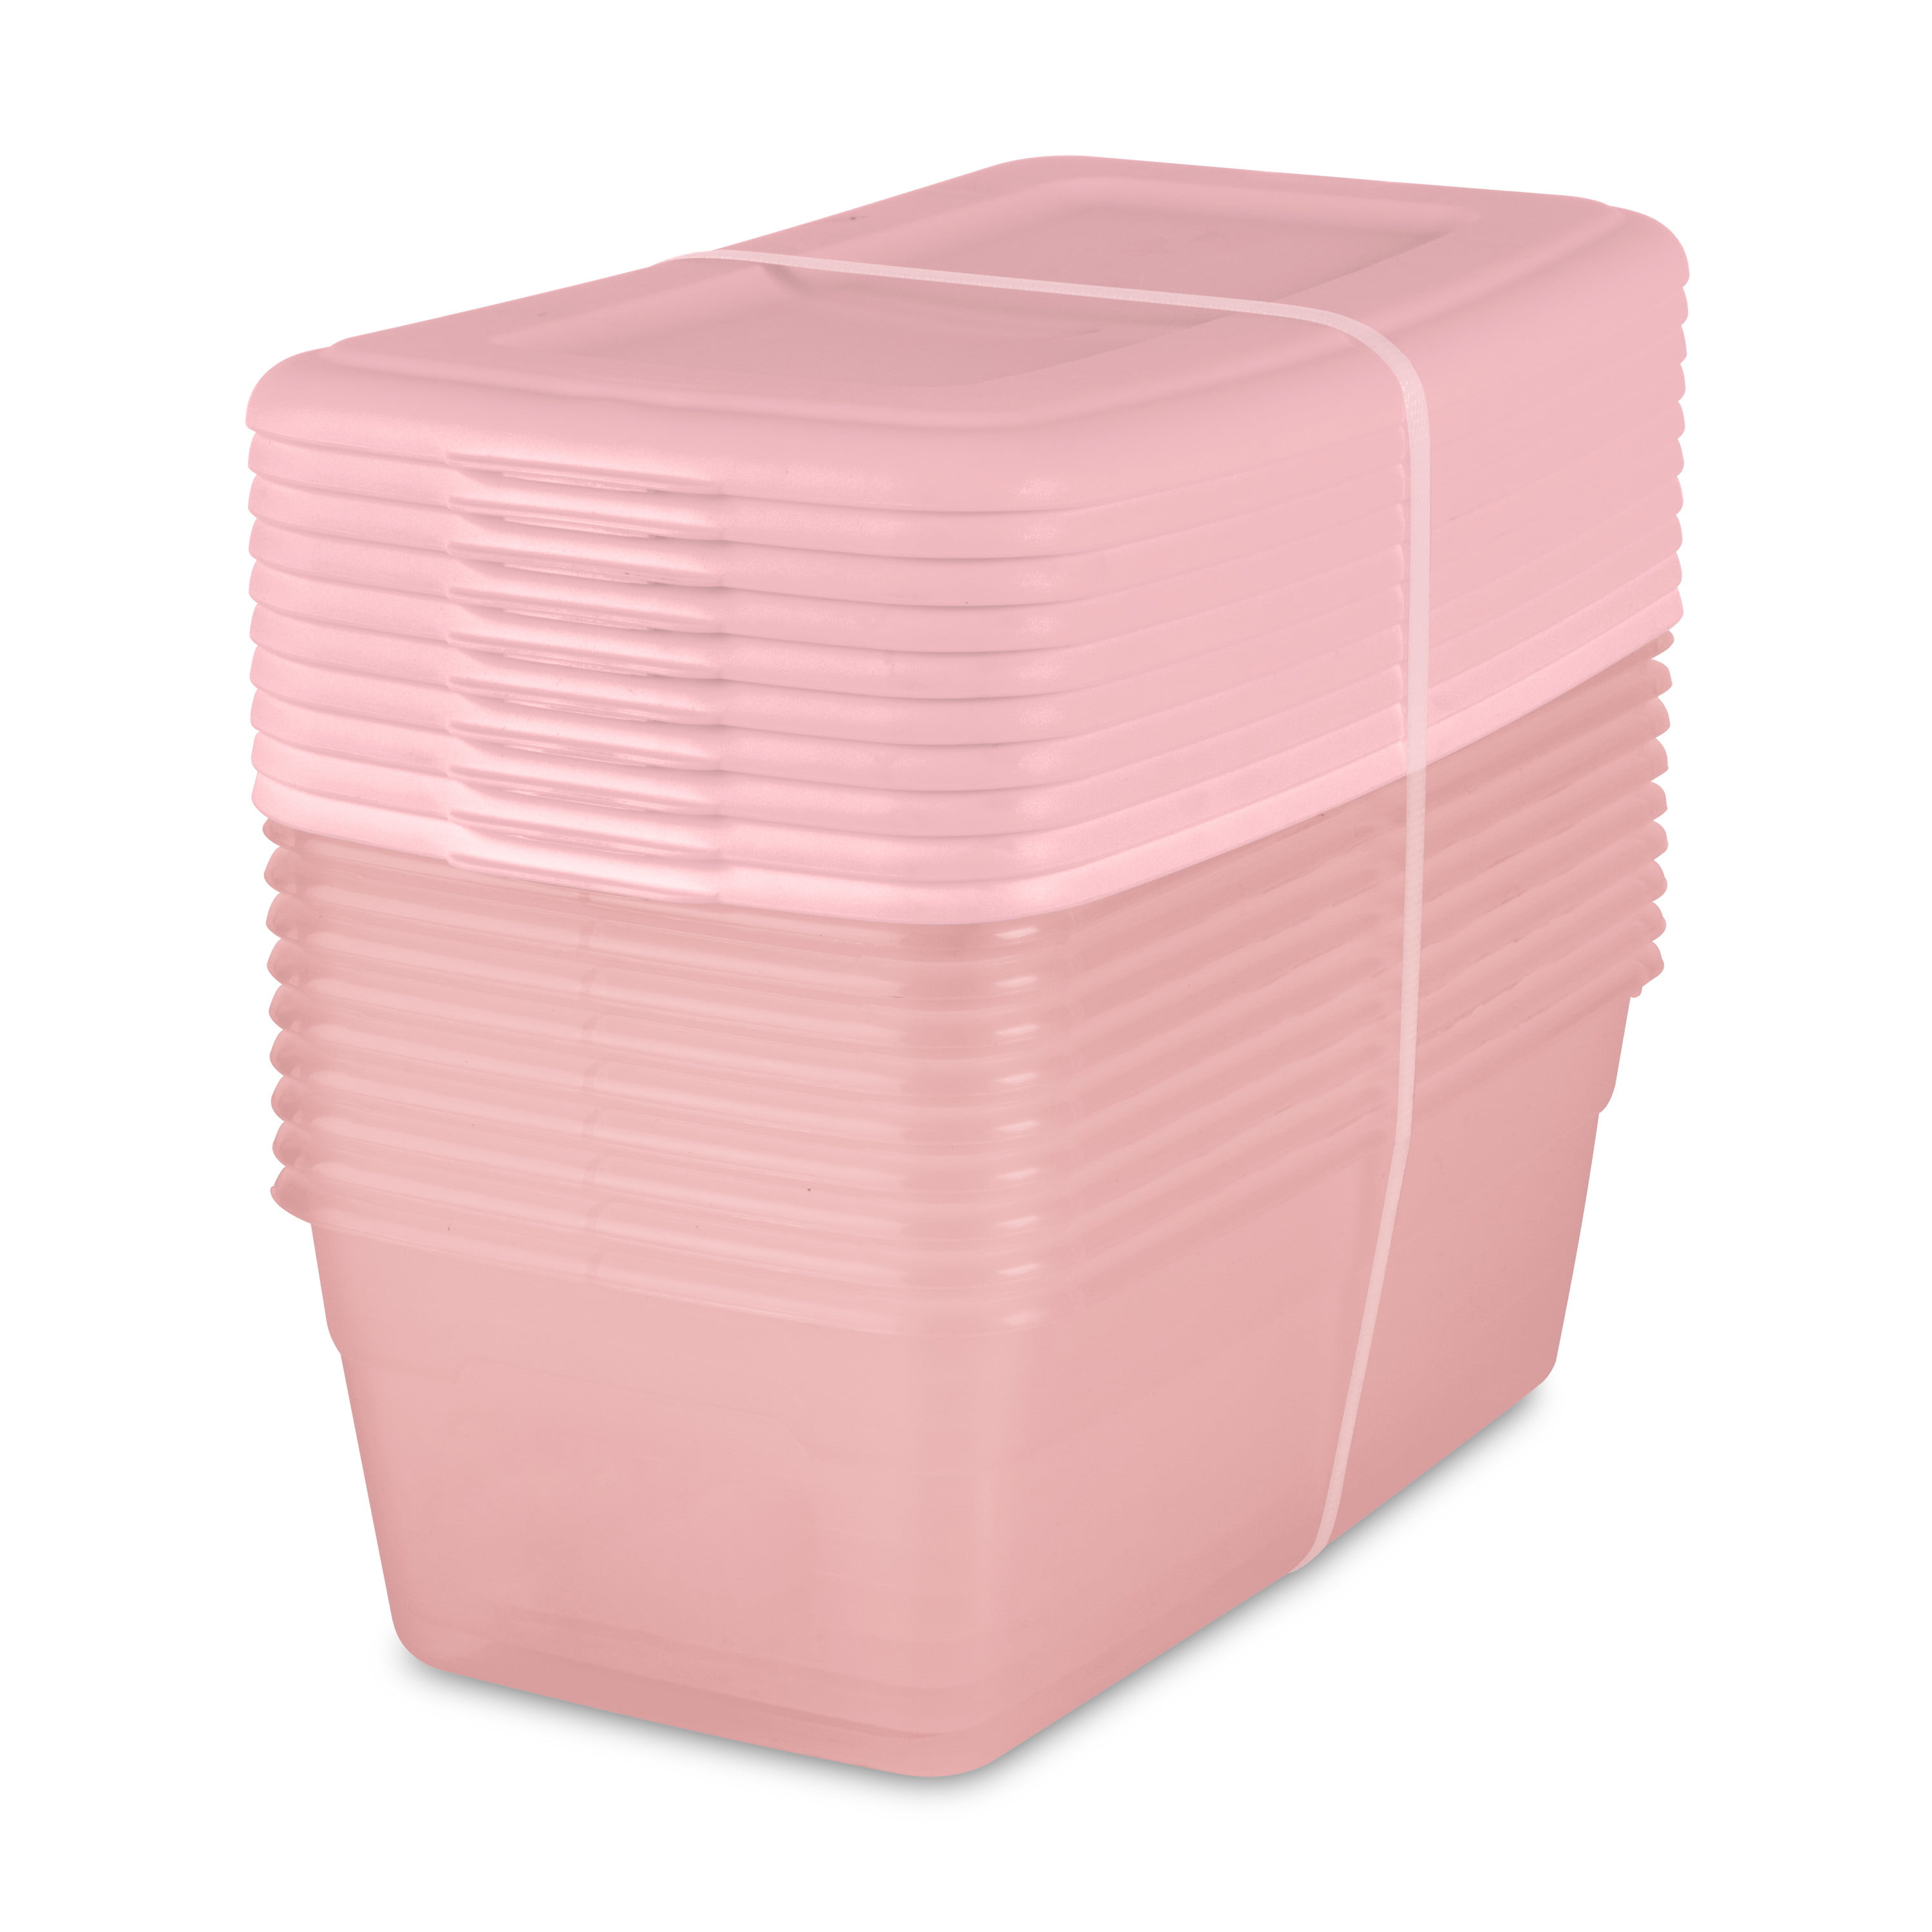 Sterilite Plastic 6 Qt. Storage Box Blush Pink Tint Set of 40